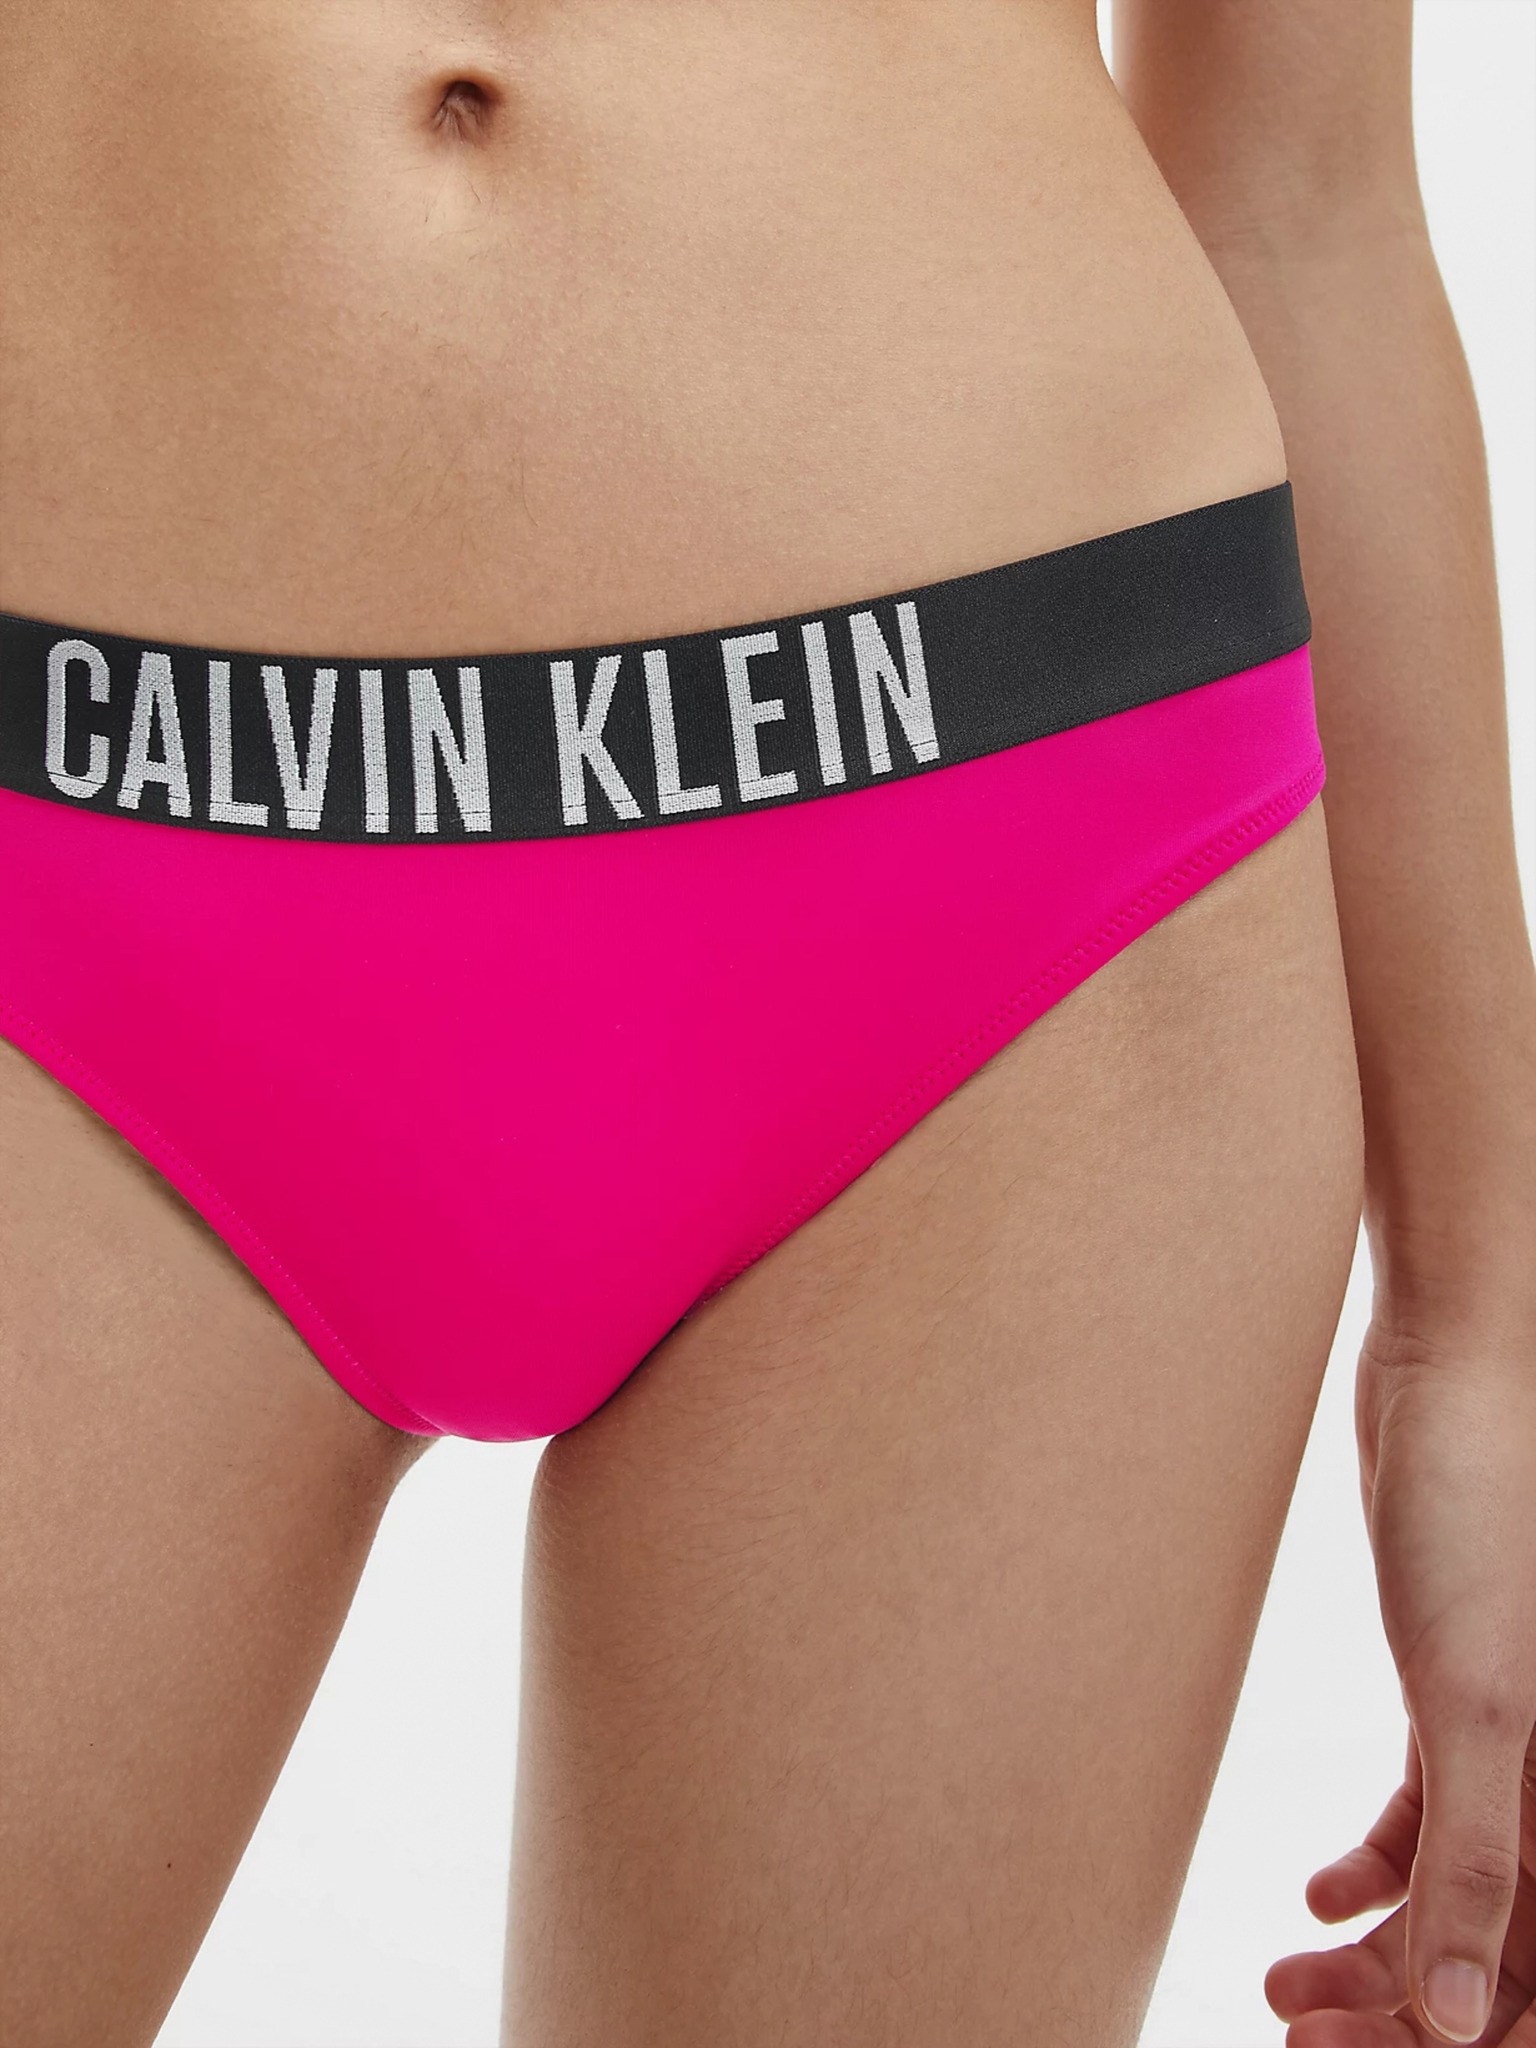 Calvin Klein Womens Hollywood Pink Cheeky Bikini Briefs